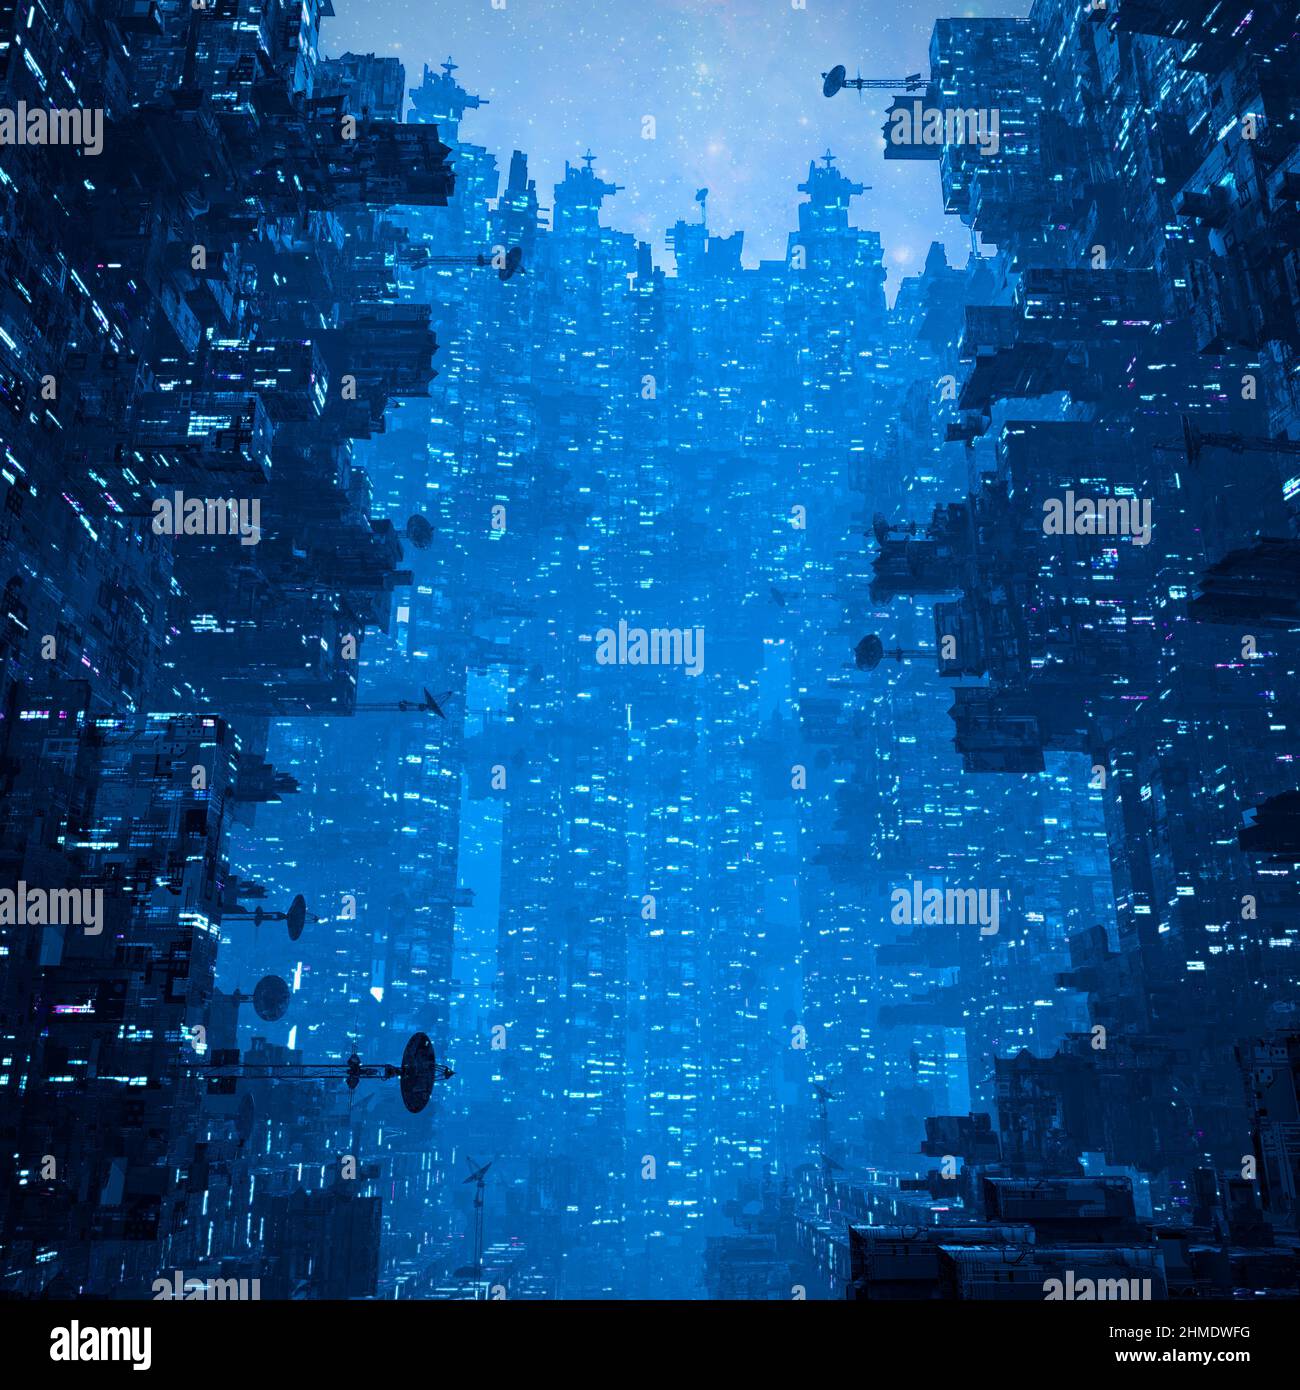 La ville cyberpunk la nuit - 3D illustration du paysage urbain futuriste sombre et imposant de la science-fiction Banque D'Images